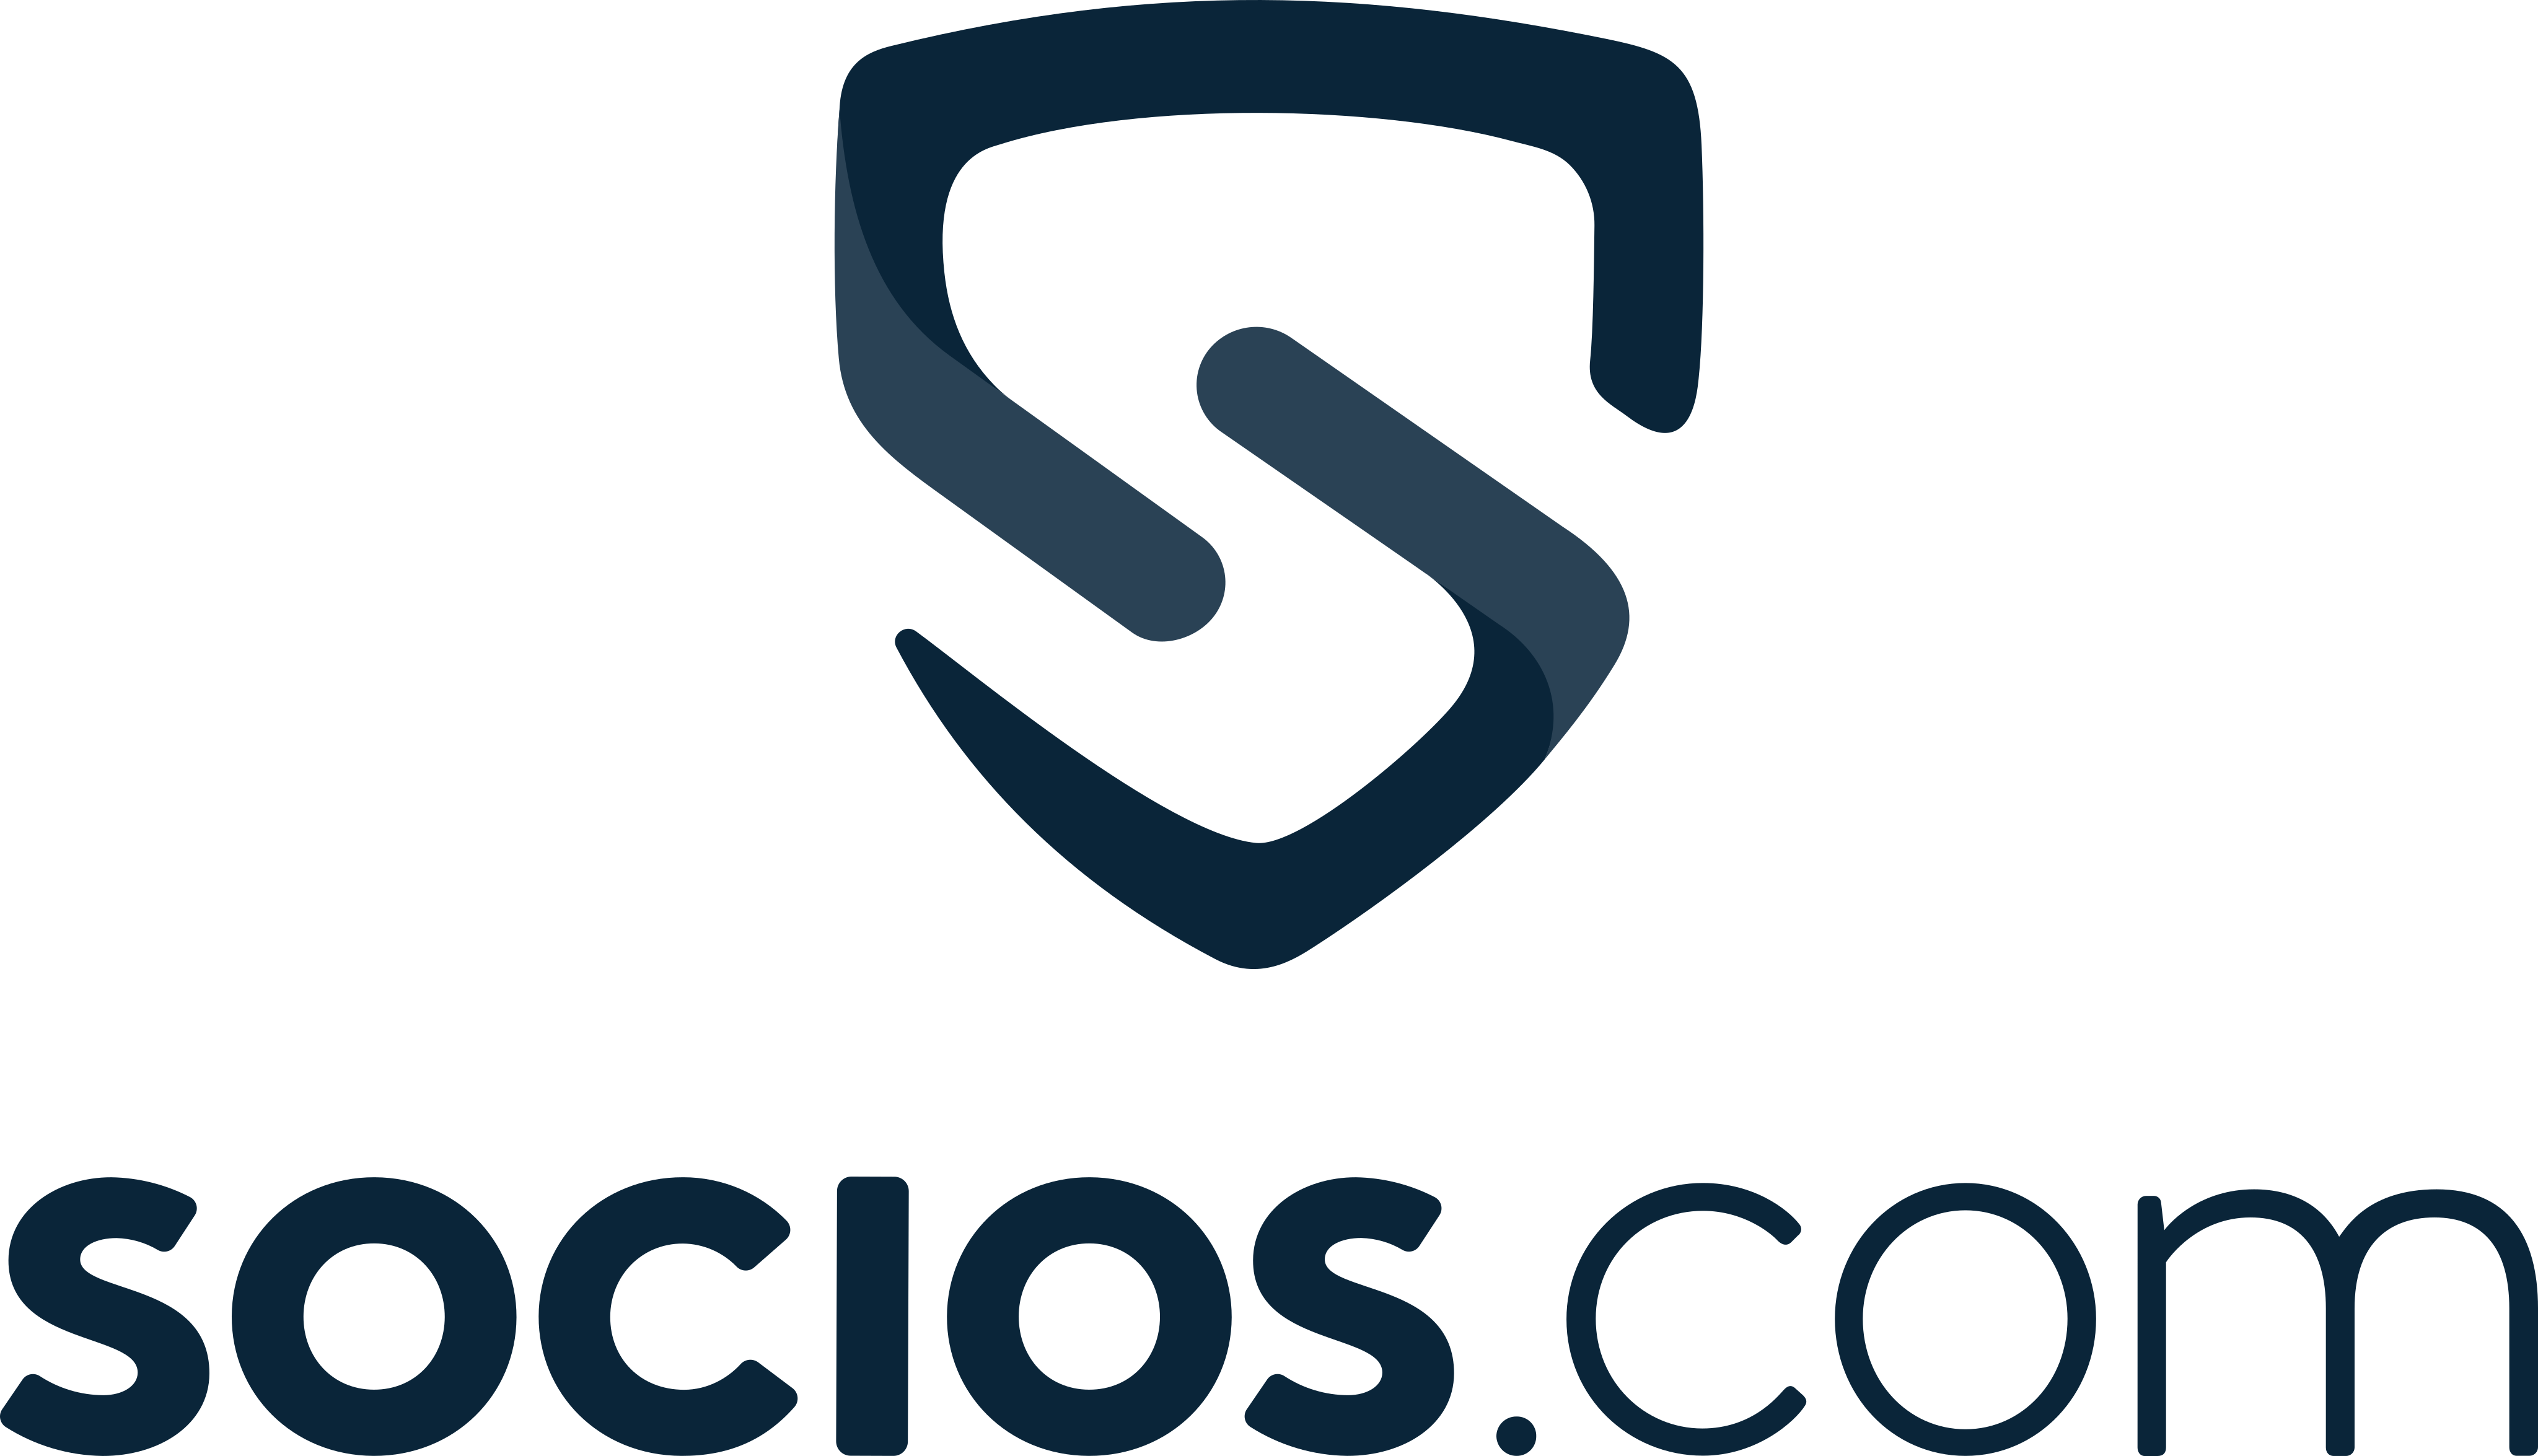 socios com logo 1 - Socios.com Logo